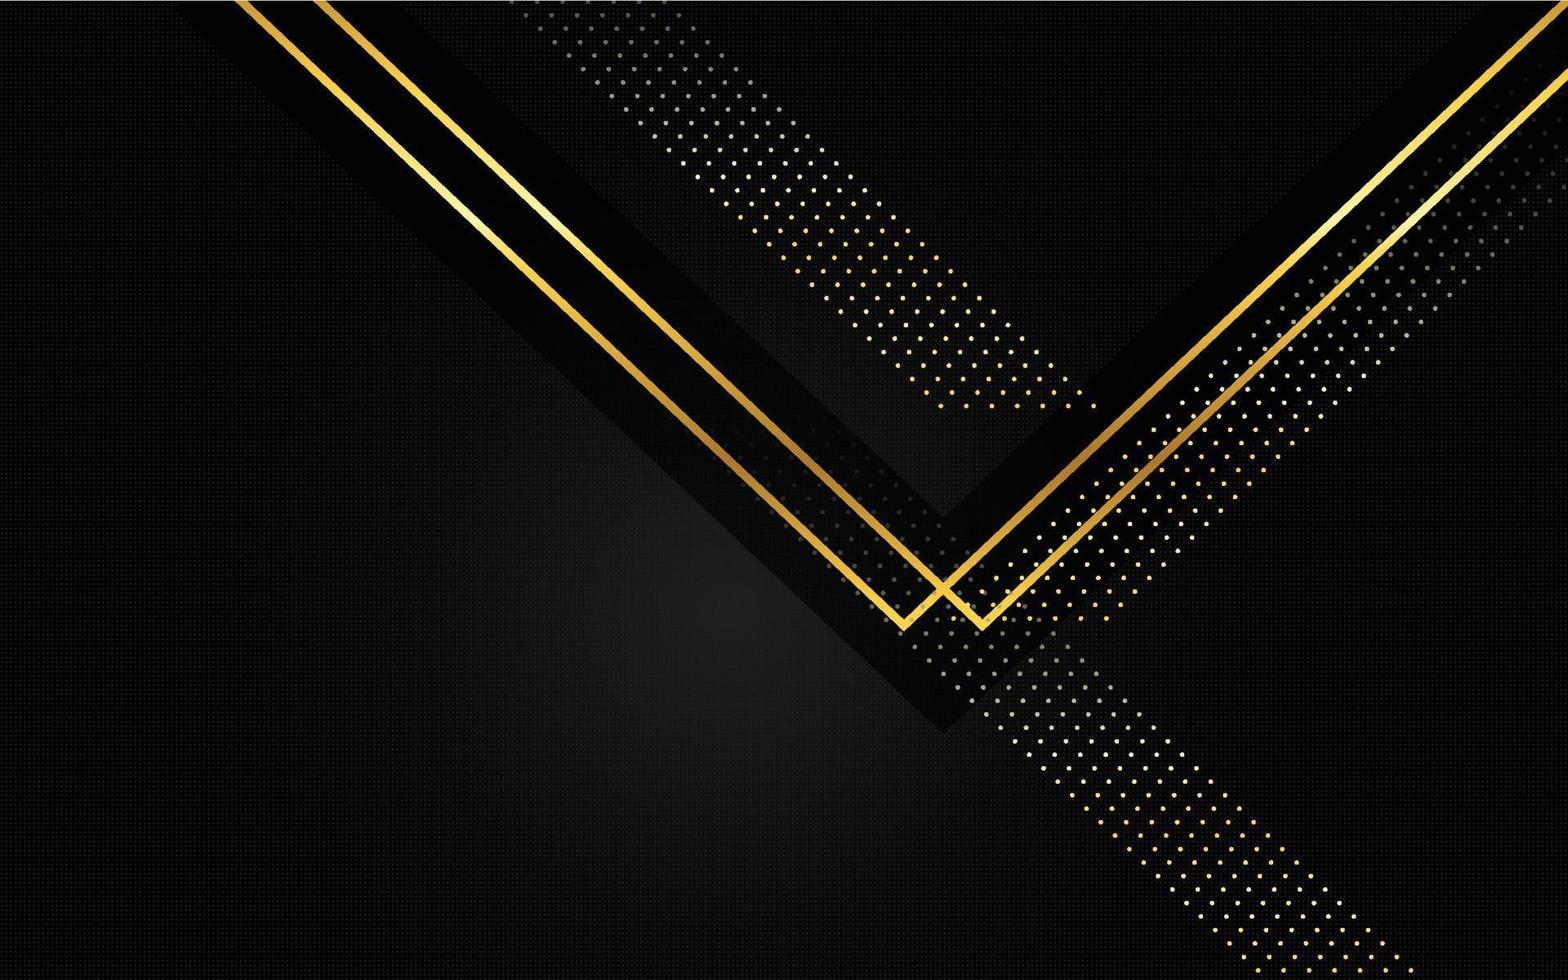 goldene dreiecksmusterlinie auf schwarzem hintergrund. Premium-Luxus-geometrisches Muster. dreieckige goldene leichte nahtlose textur vektor